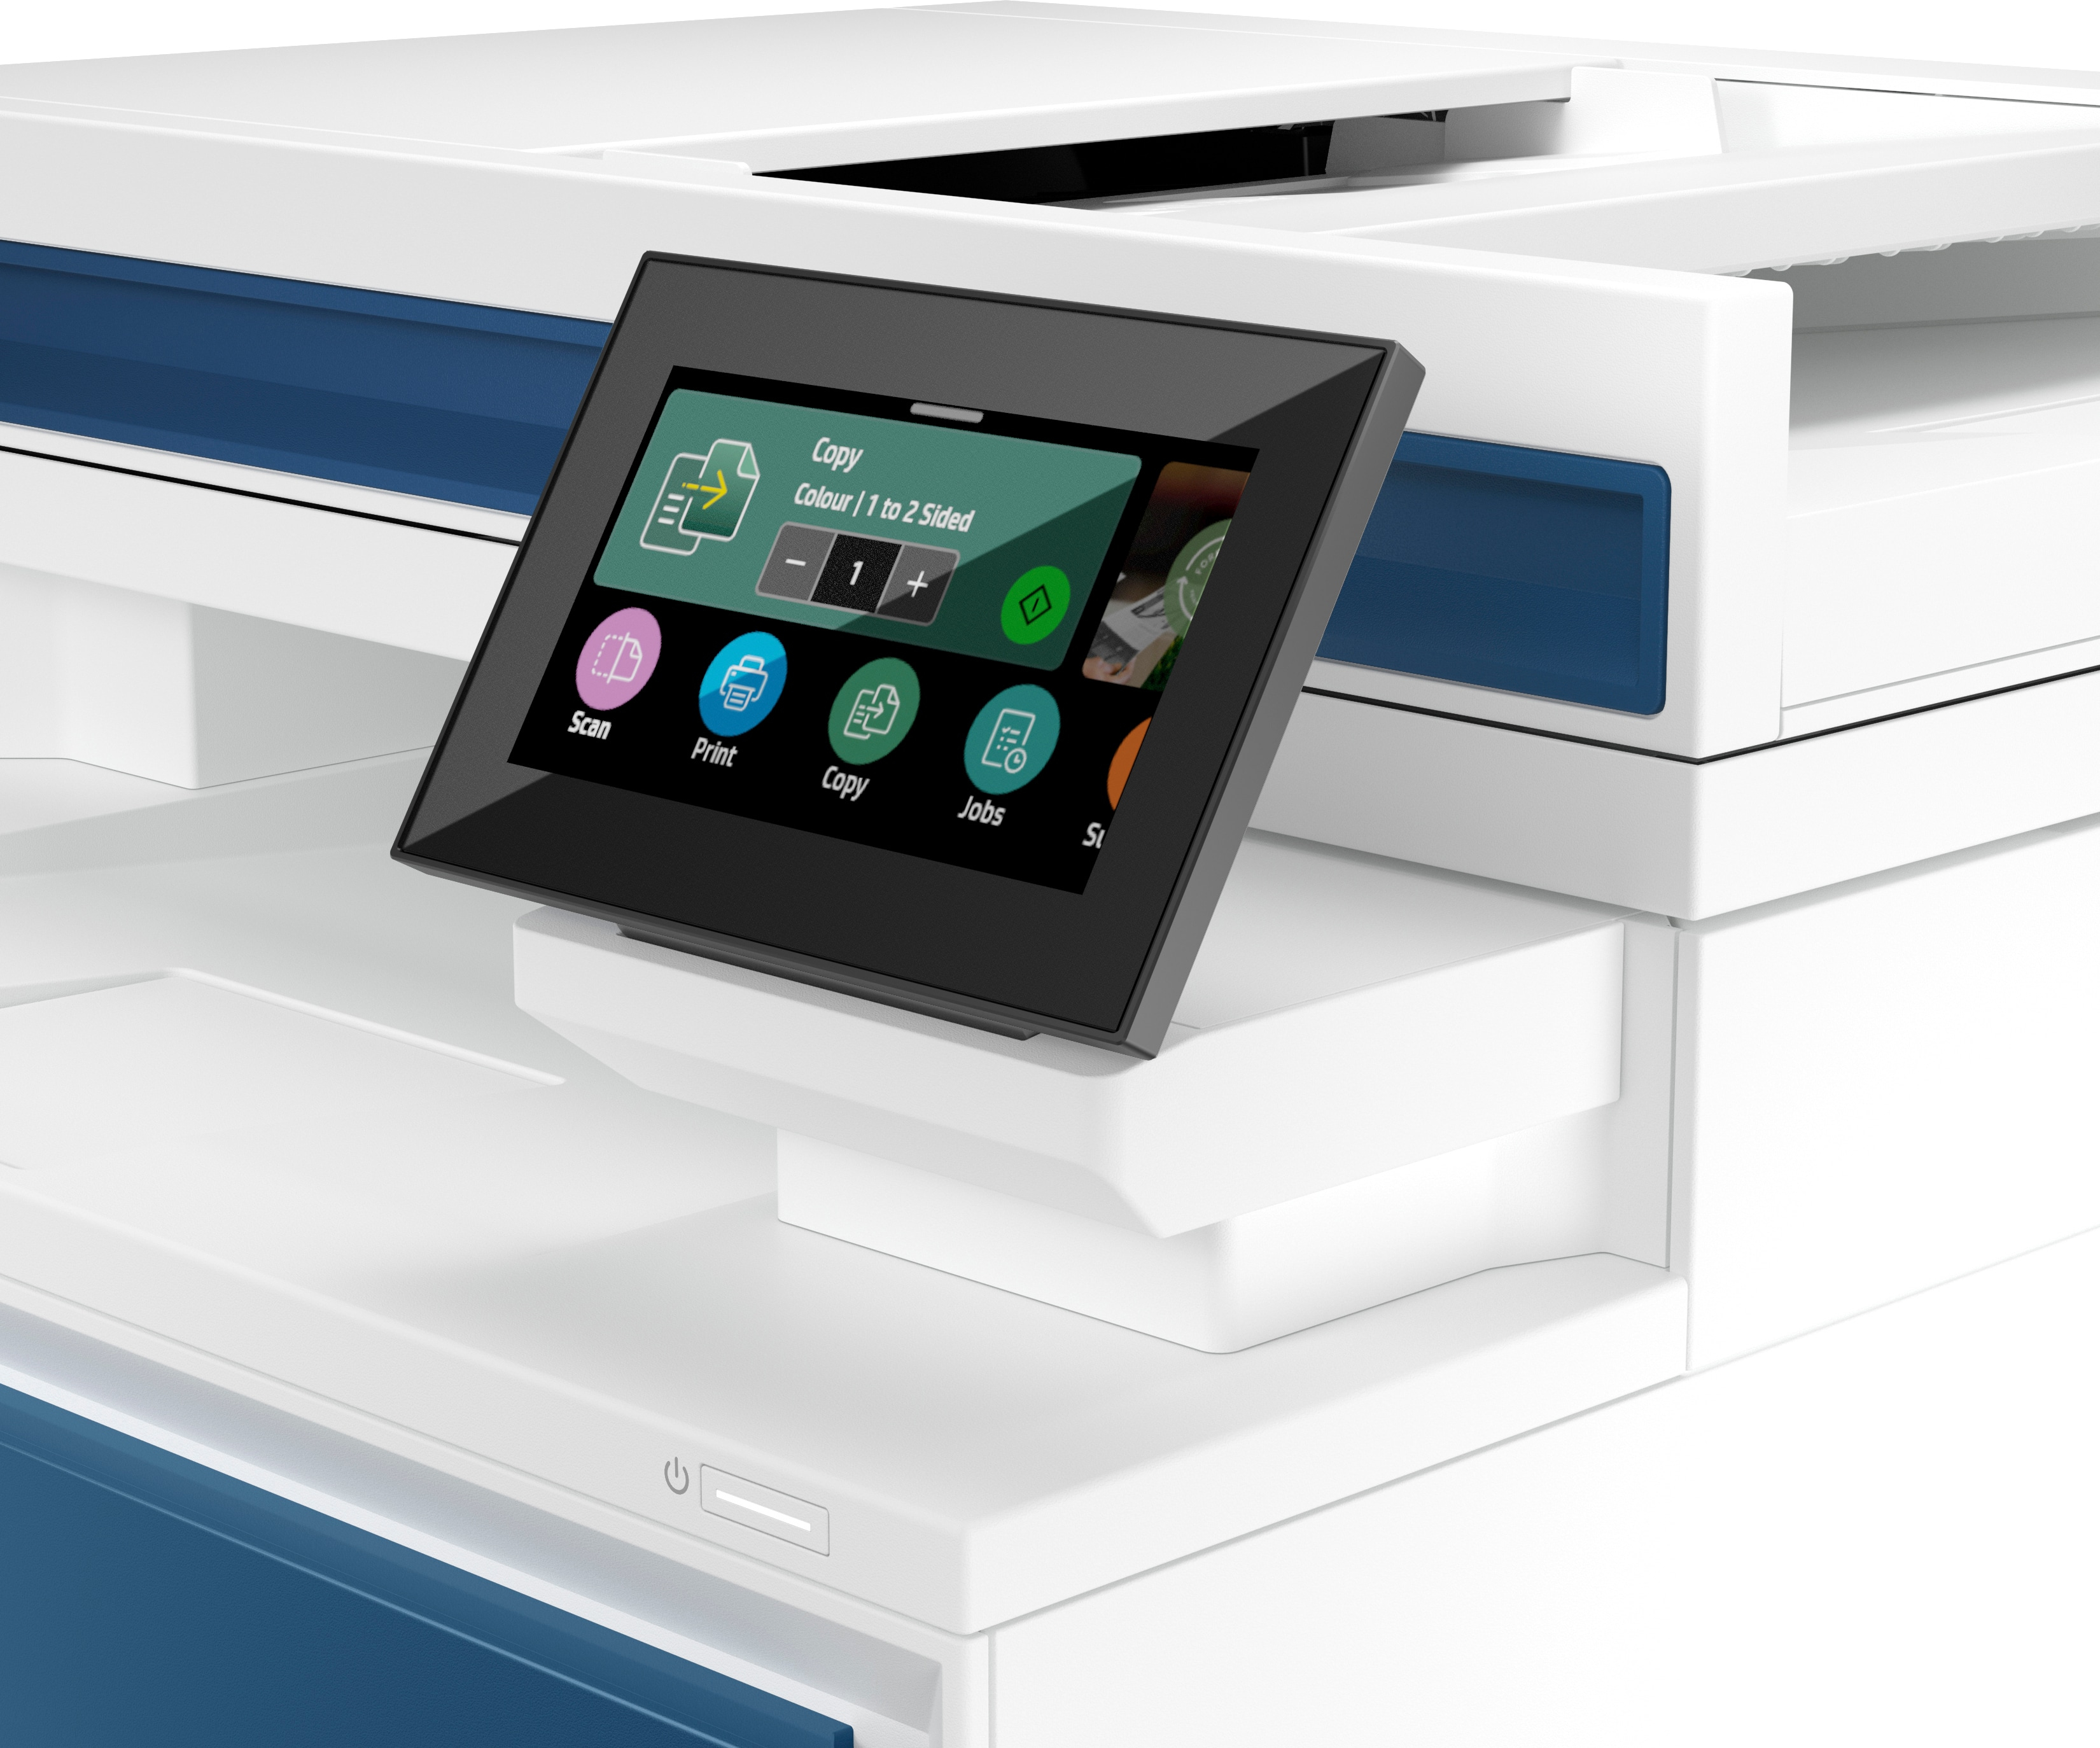 HP Color LaserJet Pro MFP 4302fdn Drucker, Farbe, Drucker für Kleine und mittlere Unternehmen, Drucken, Kopieren, Scannen, Faxen, Drucken vom Smartphone oder Tablet; Automatischer Vorlagenei